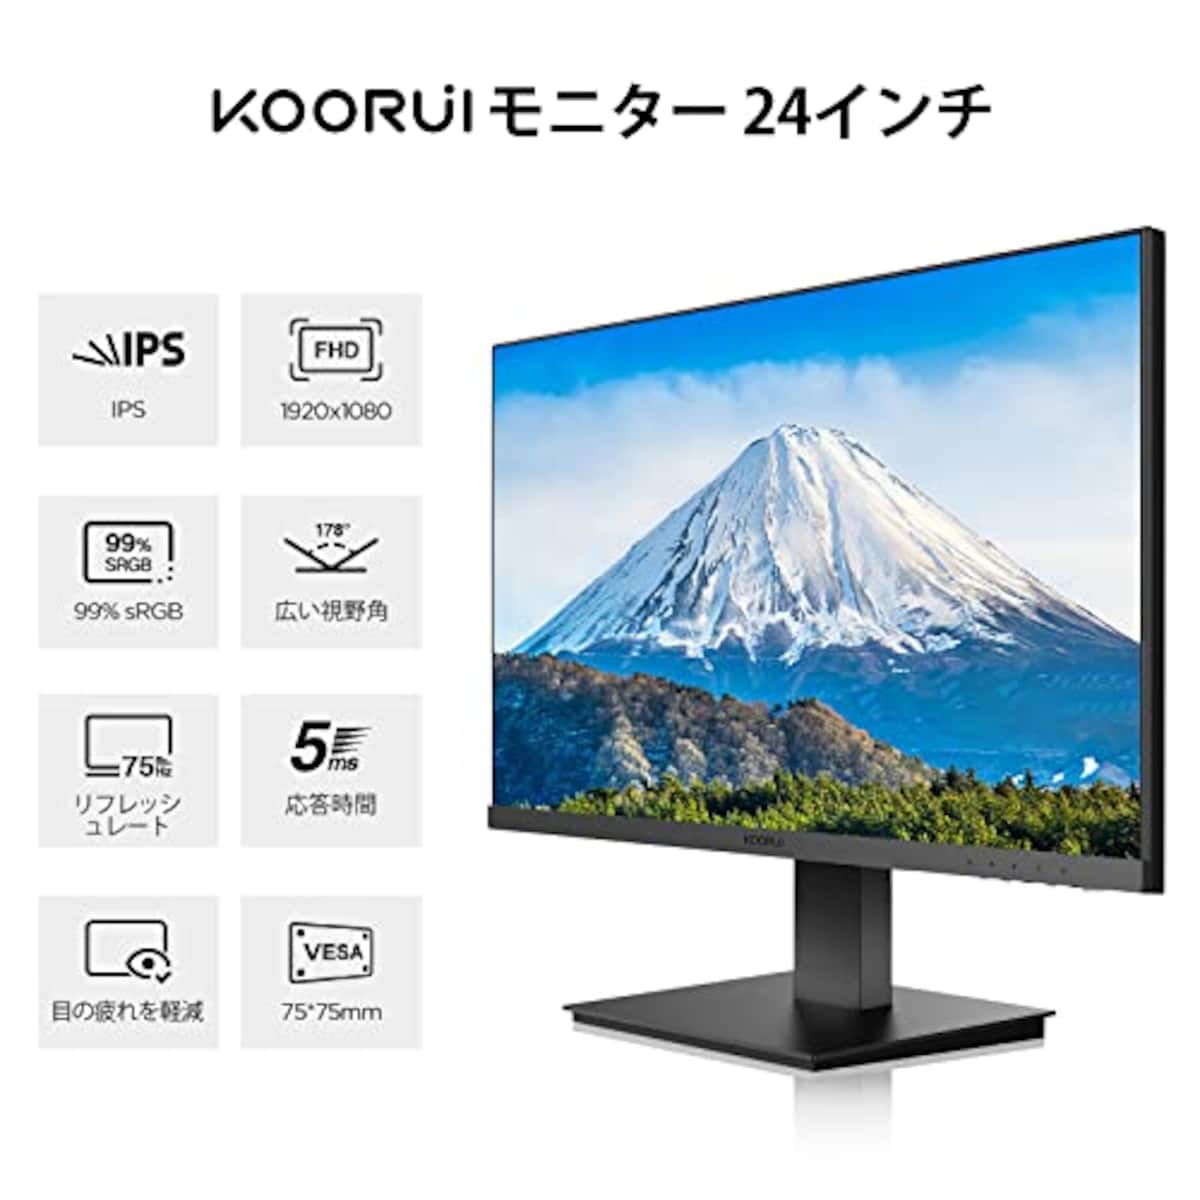  KOORUI モニター 24インチ、ディスプレイ フルHD IPSパネル PCモニター(5ms/75hz/HDMI+VGA/VESA対応/目疲れに優しい/広い視野角178°/スピーカー非搭載)画像5 